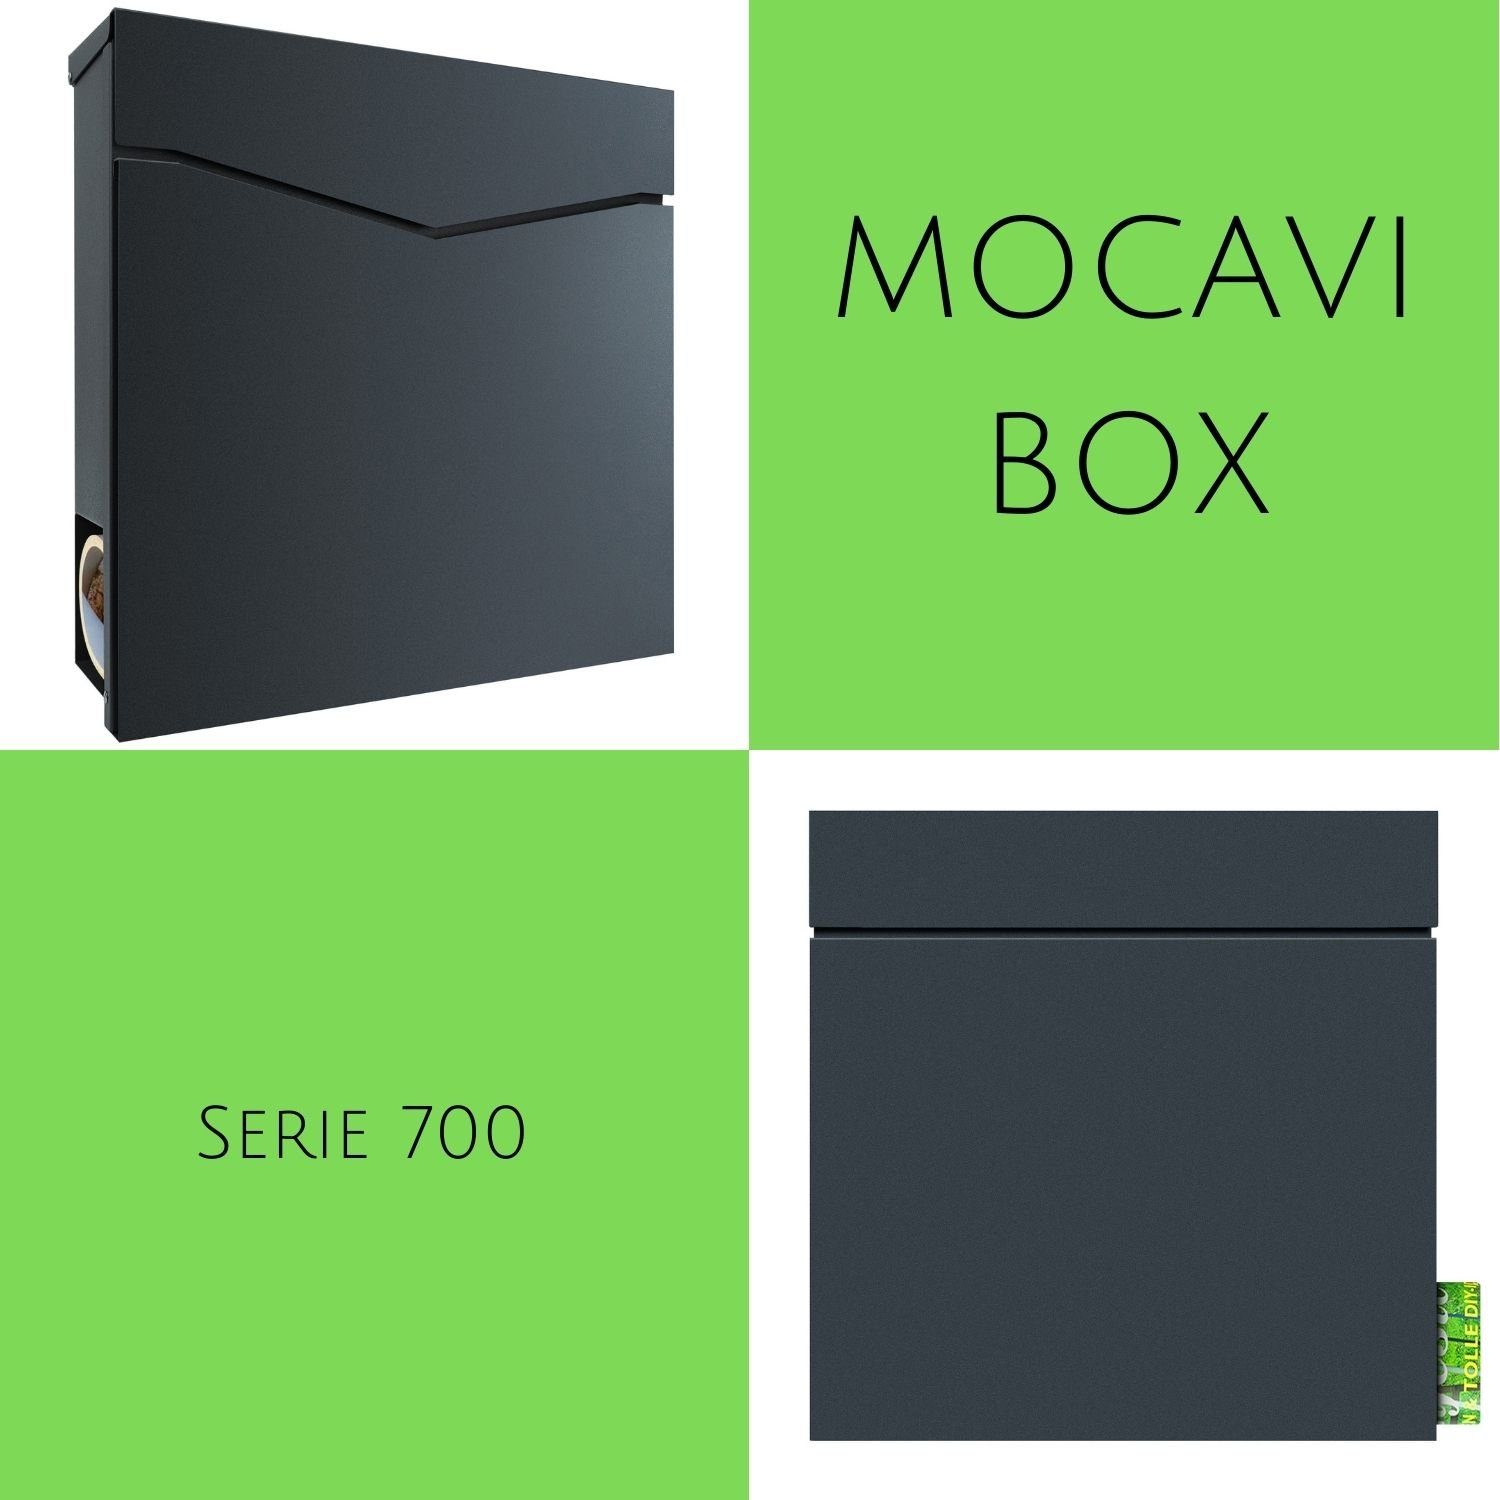 713 MOCAVI Box Briefkasten Zeitungsfach mit integriert Briefkasten anthrazit, MOCAVI